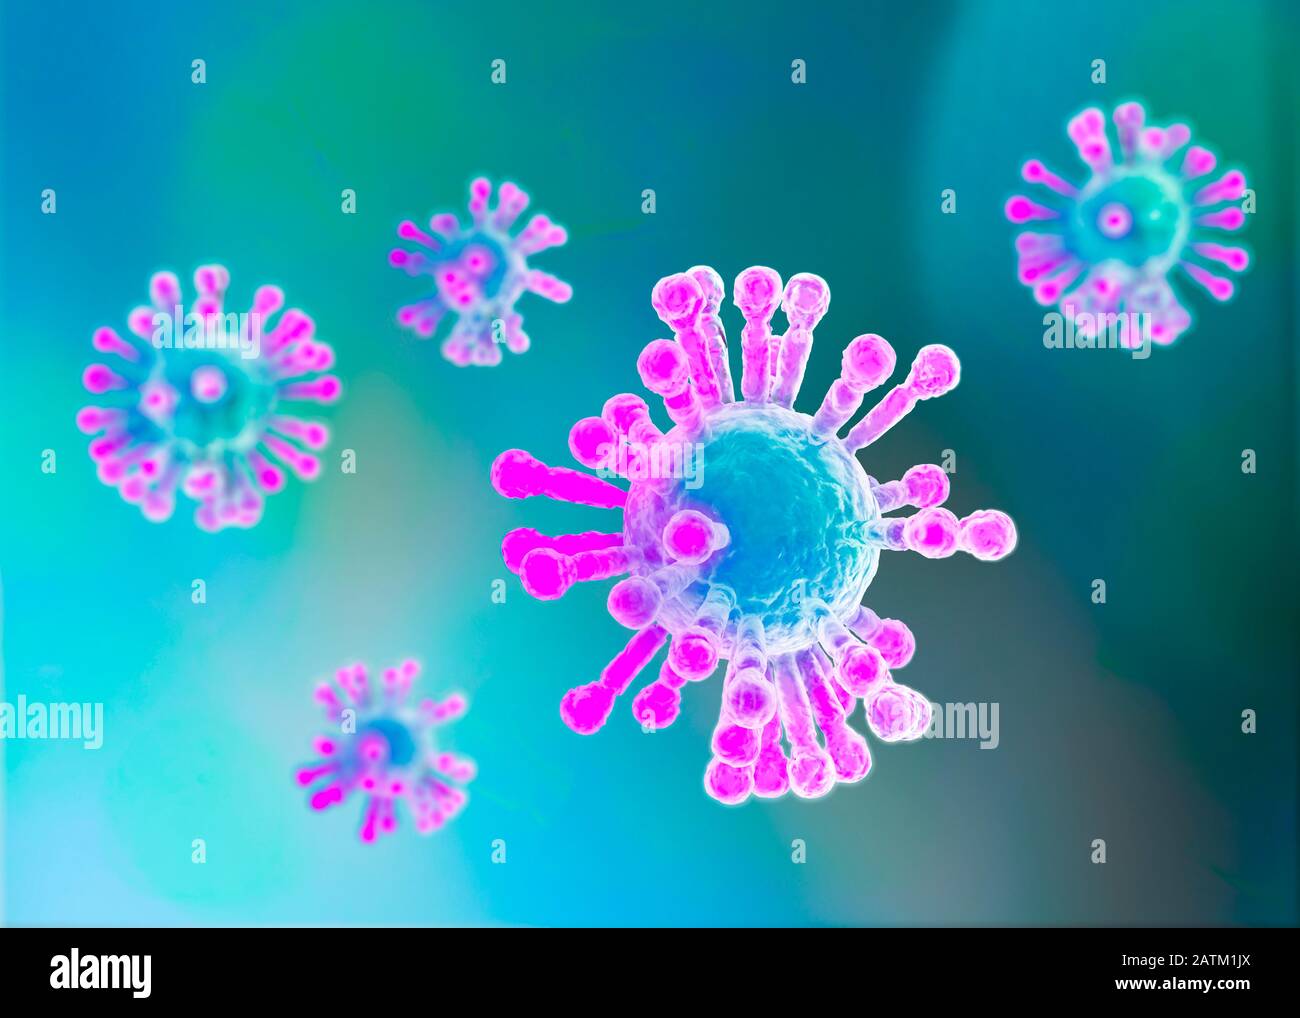 Vue microscopique du Coronavirus, un pathogène qui attaque les voies respiratoires. Contagion. Analyse et test, expérimentation. 2019-nCoV. Sras. Banque D'Images